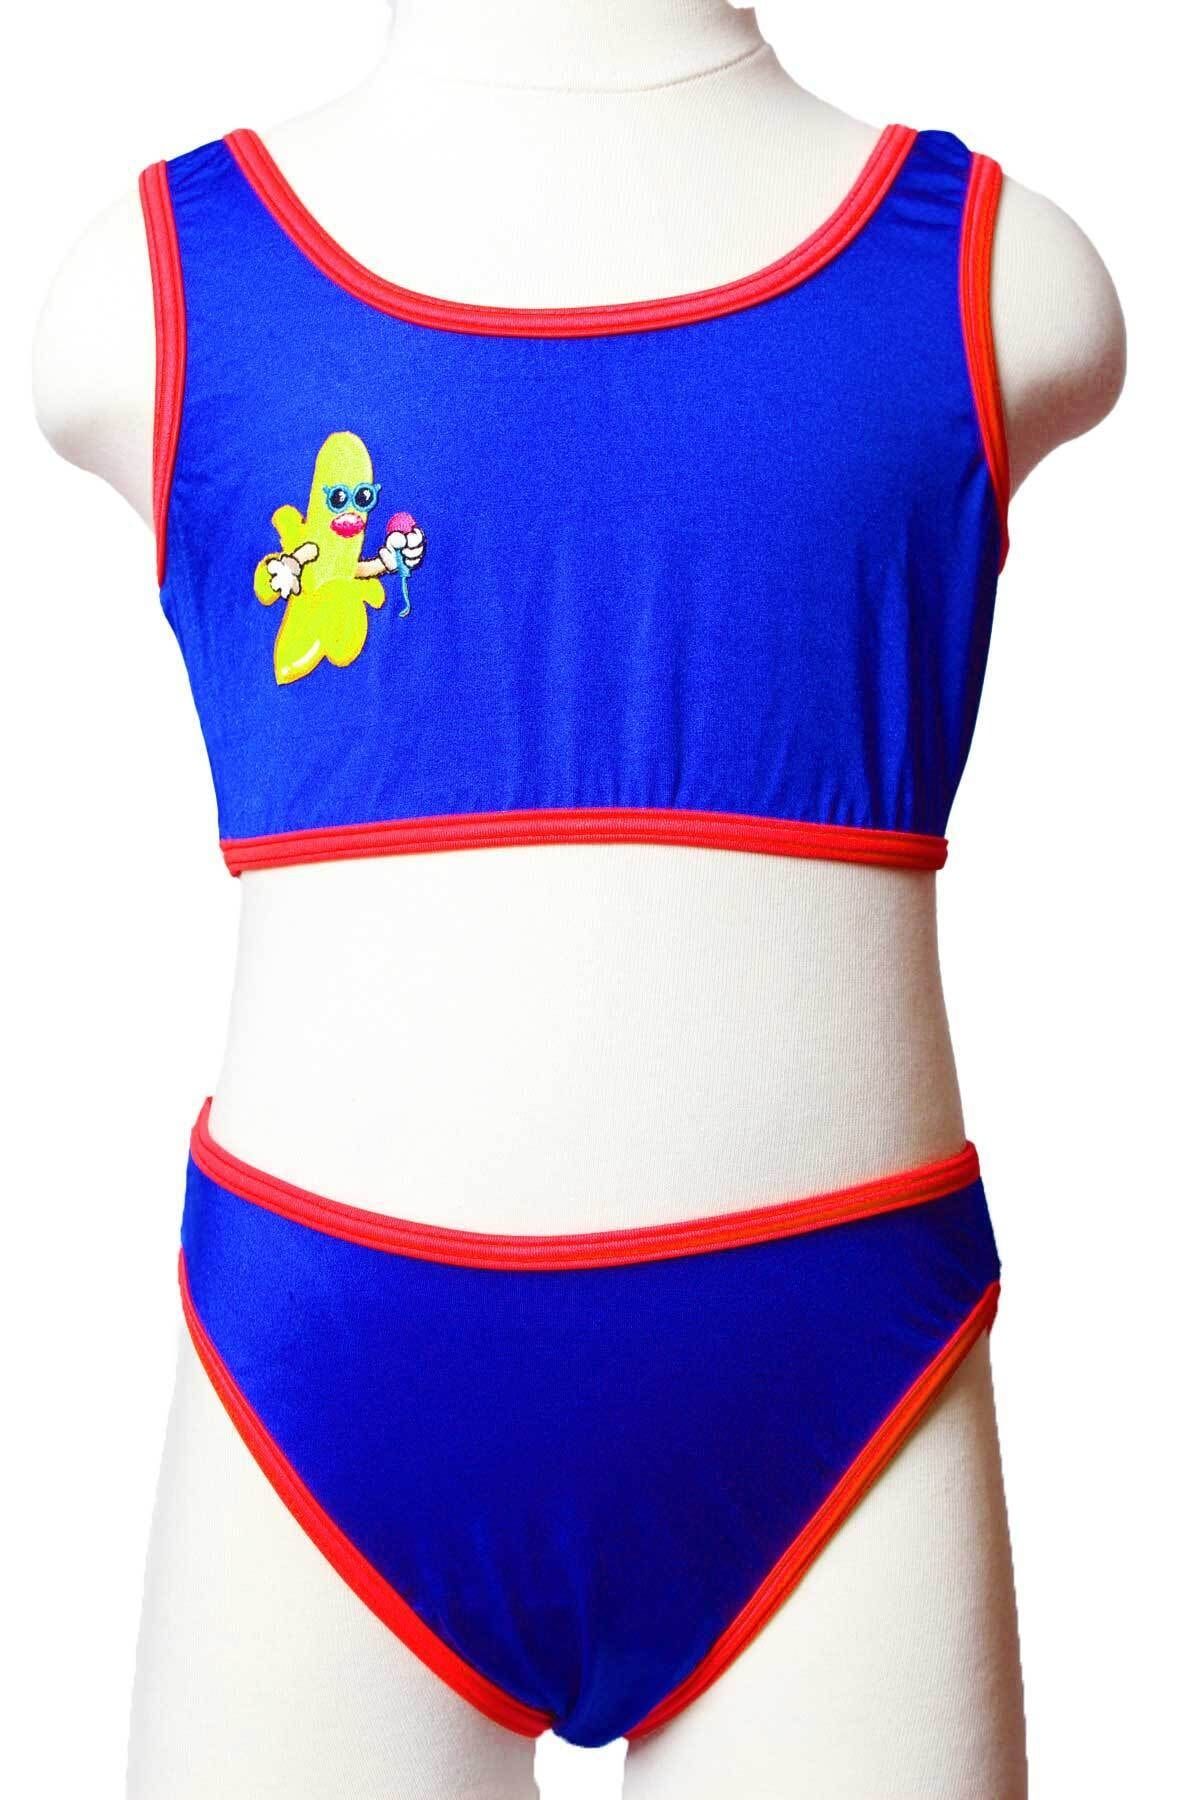 Sude Ayl Kız Çocuk Sax Bustiyer Model Armalı Alt Üst Düz Bikini Takım 90